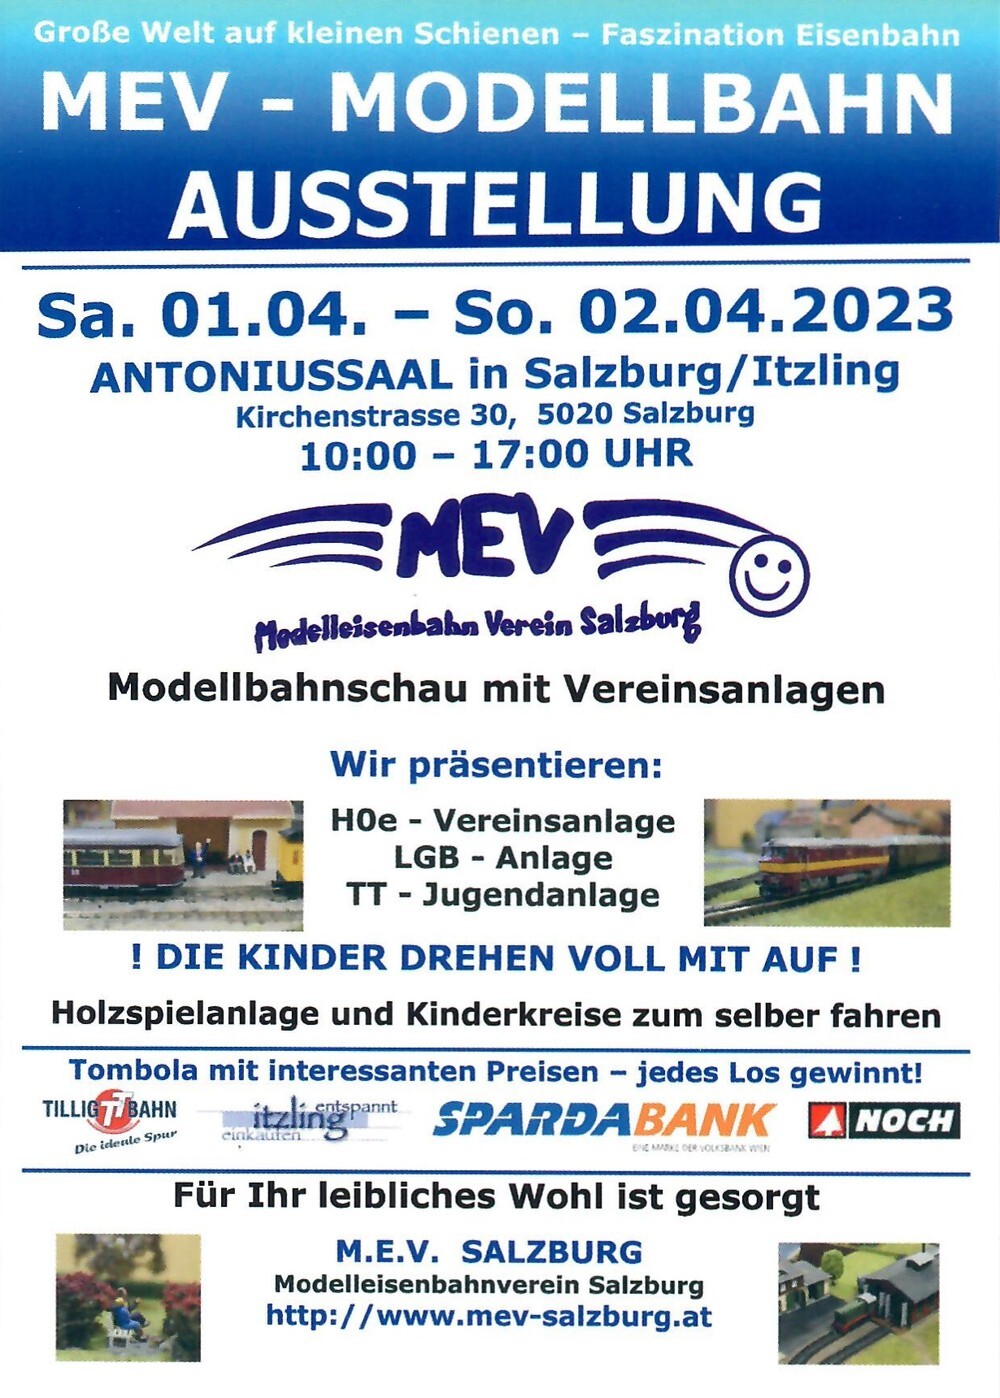 MEV Salzburg - Modellbahn Ausstellung 01.04.2023 bis 02.04.2023